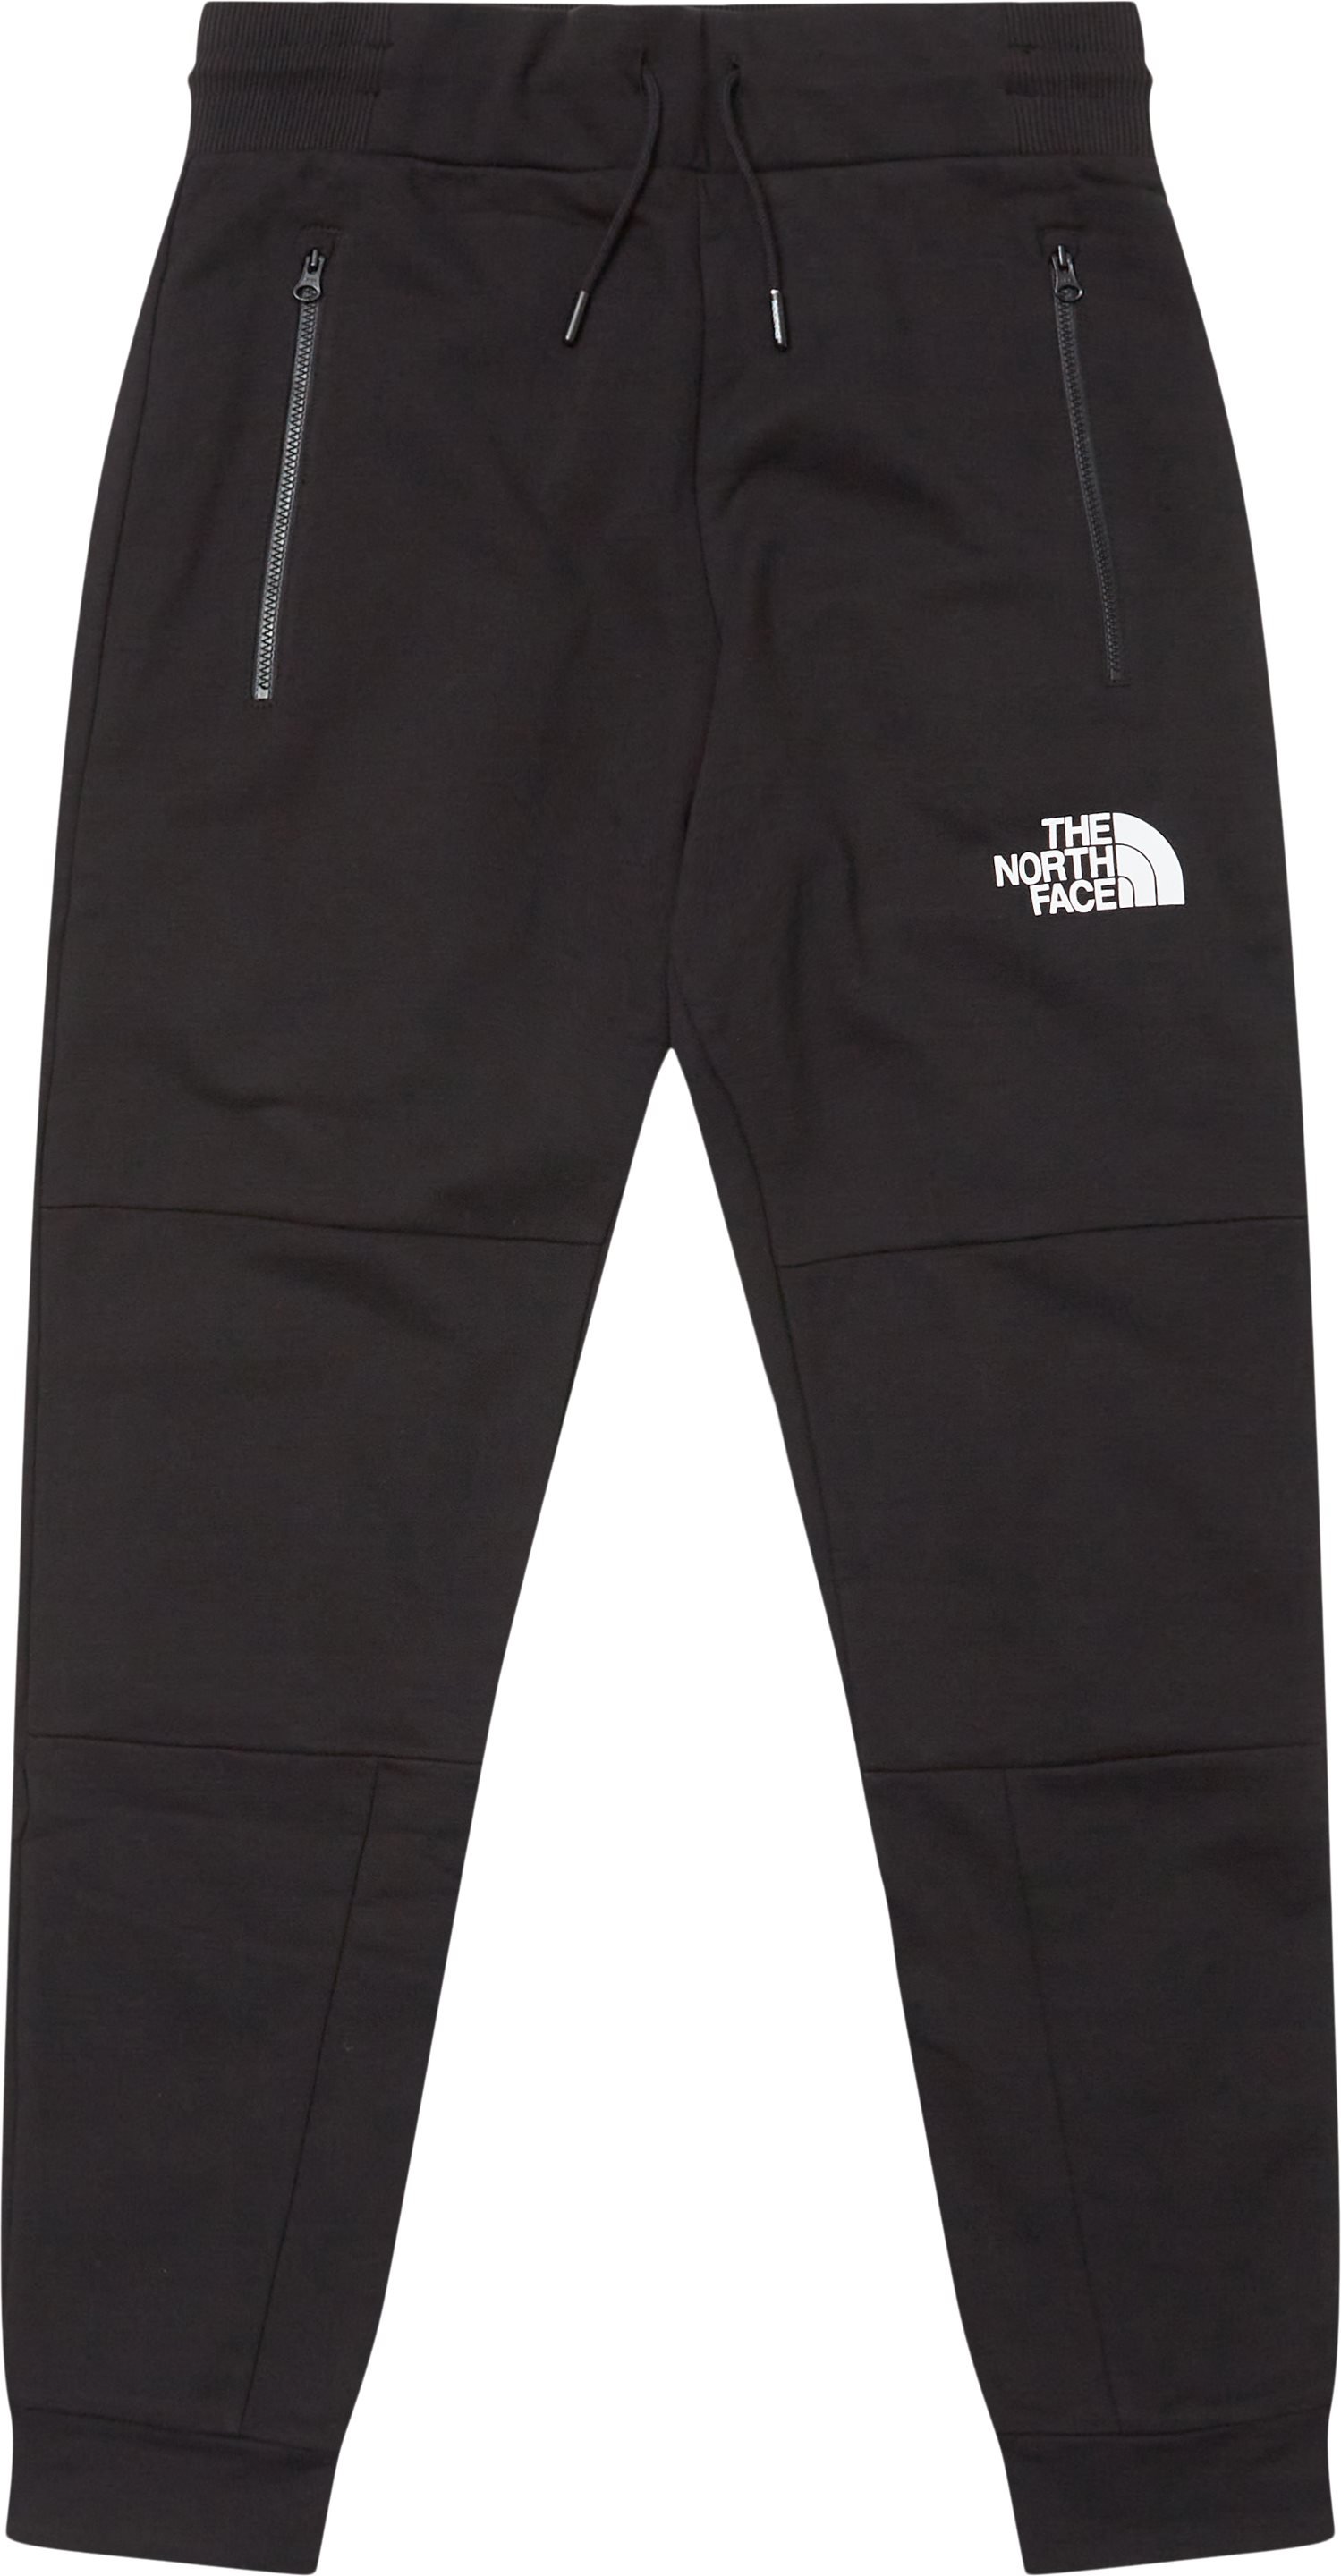 HMLYN PANT Sweatpants - Bukser - Regular fit - Sort